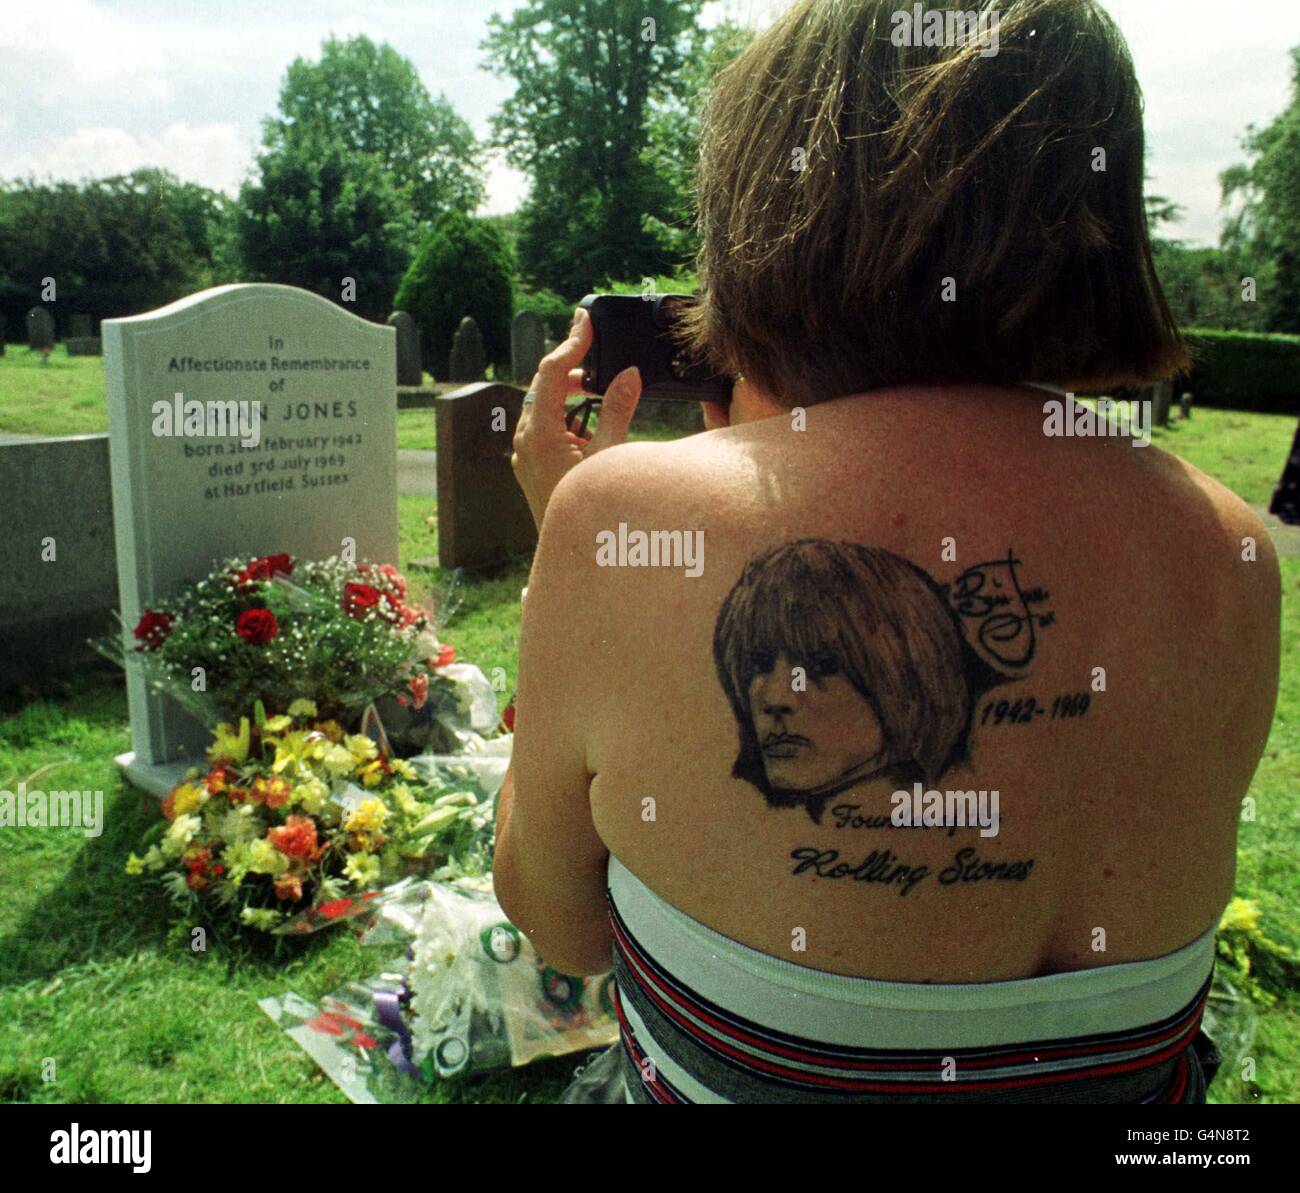 Margie Calvano di 50 anni, dal New Jersey, USA, con un tatuaggio Brian Jones sulla spalla, scatta una fotografia alla tomba di Cheltenham, della stella Rolling Stones che morì 30 anni fa. Foto Stock